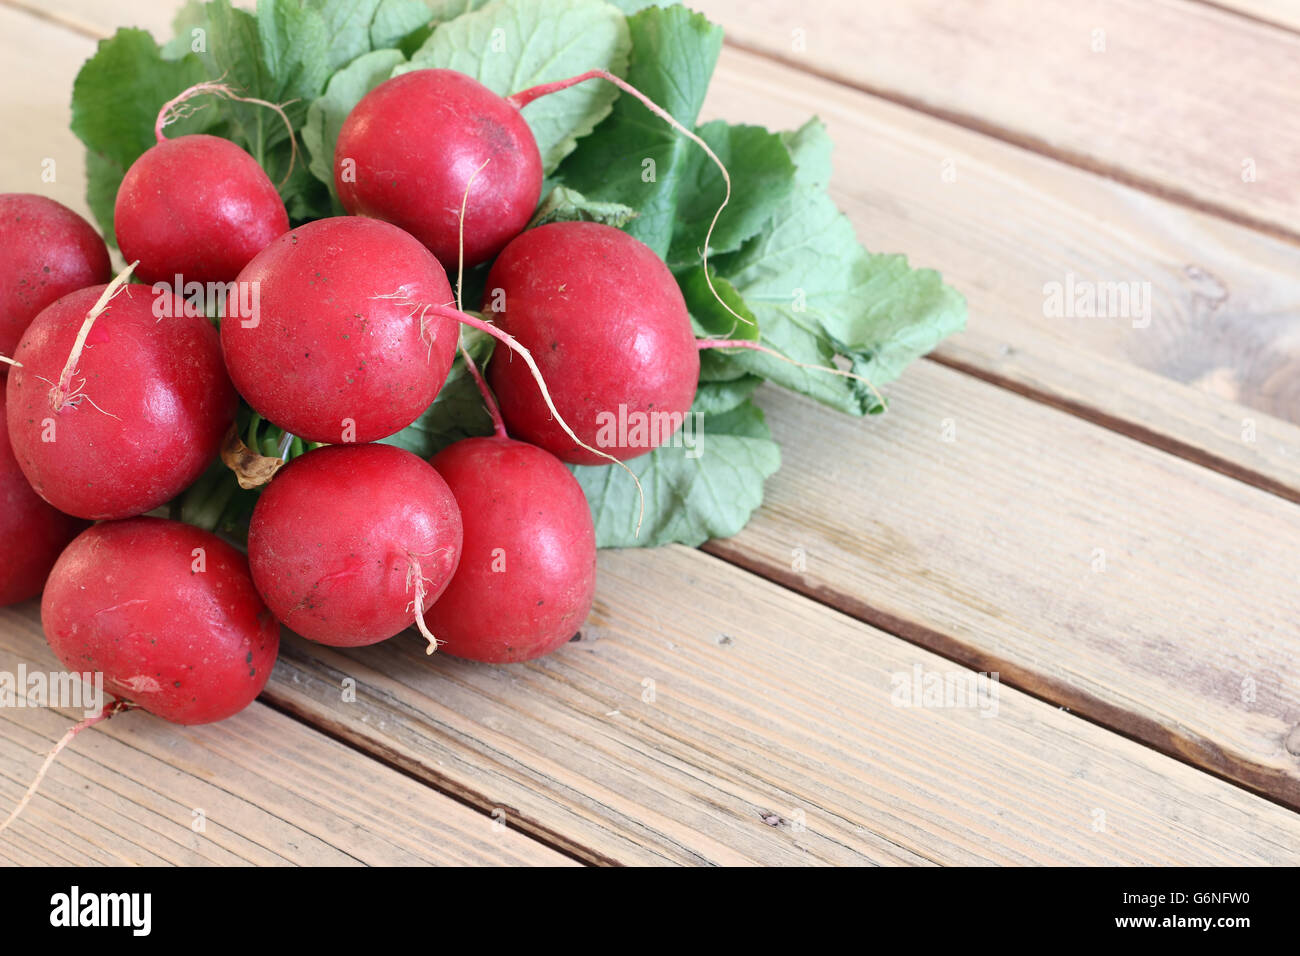 Detail of the bunch fresh radish Stock Photo